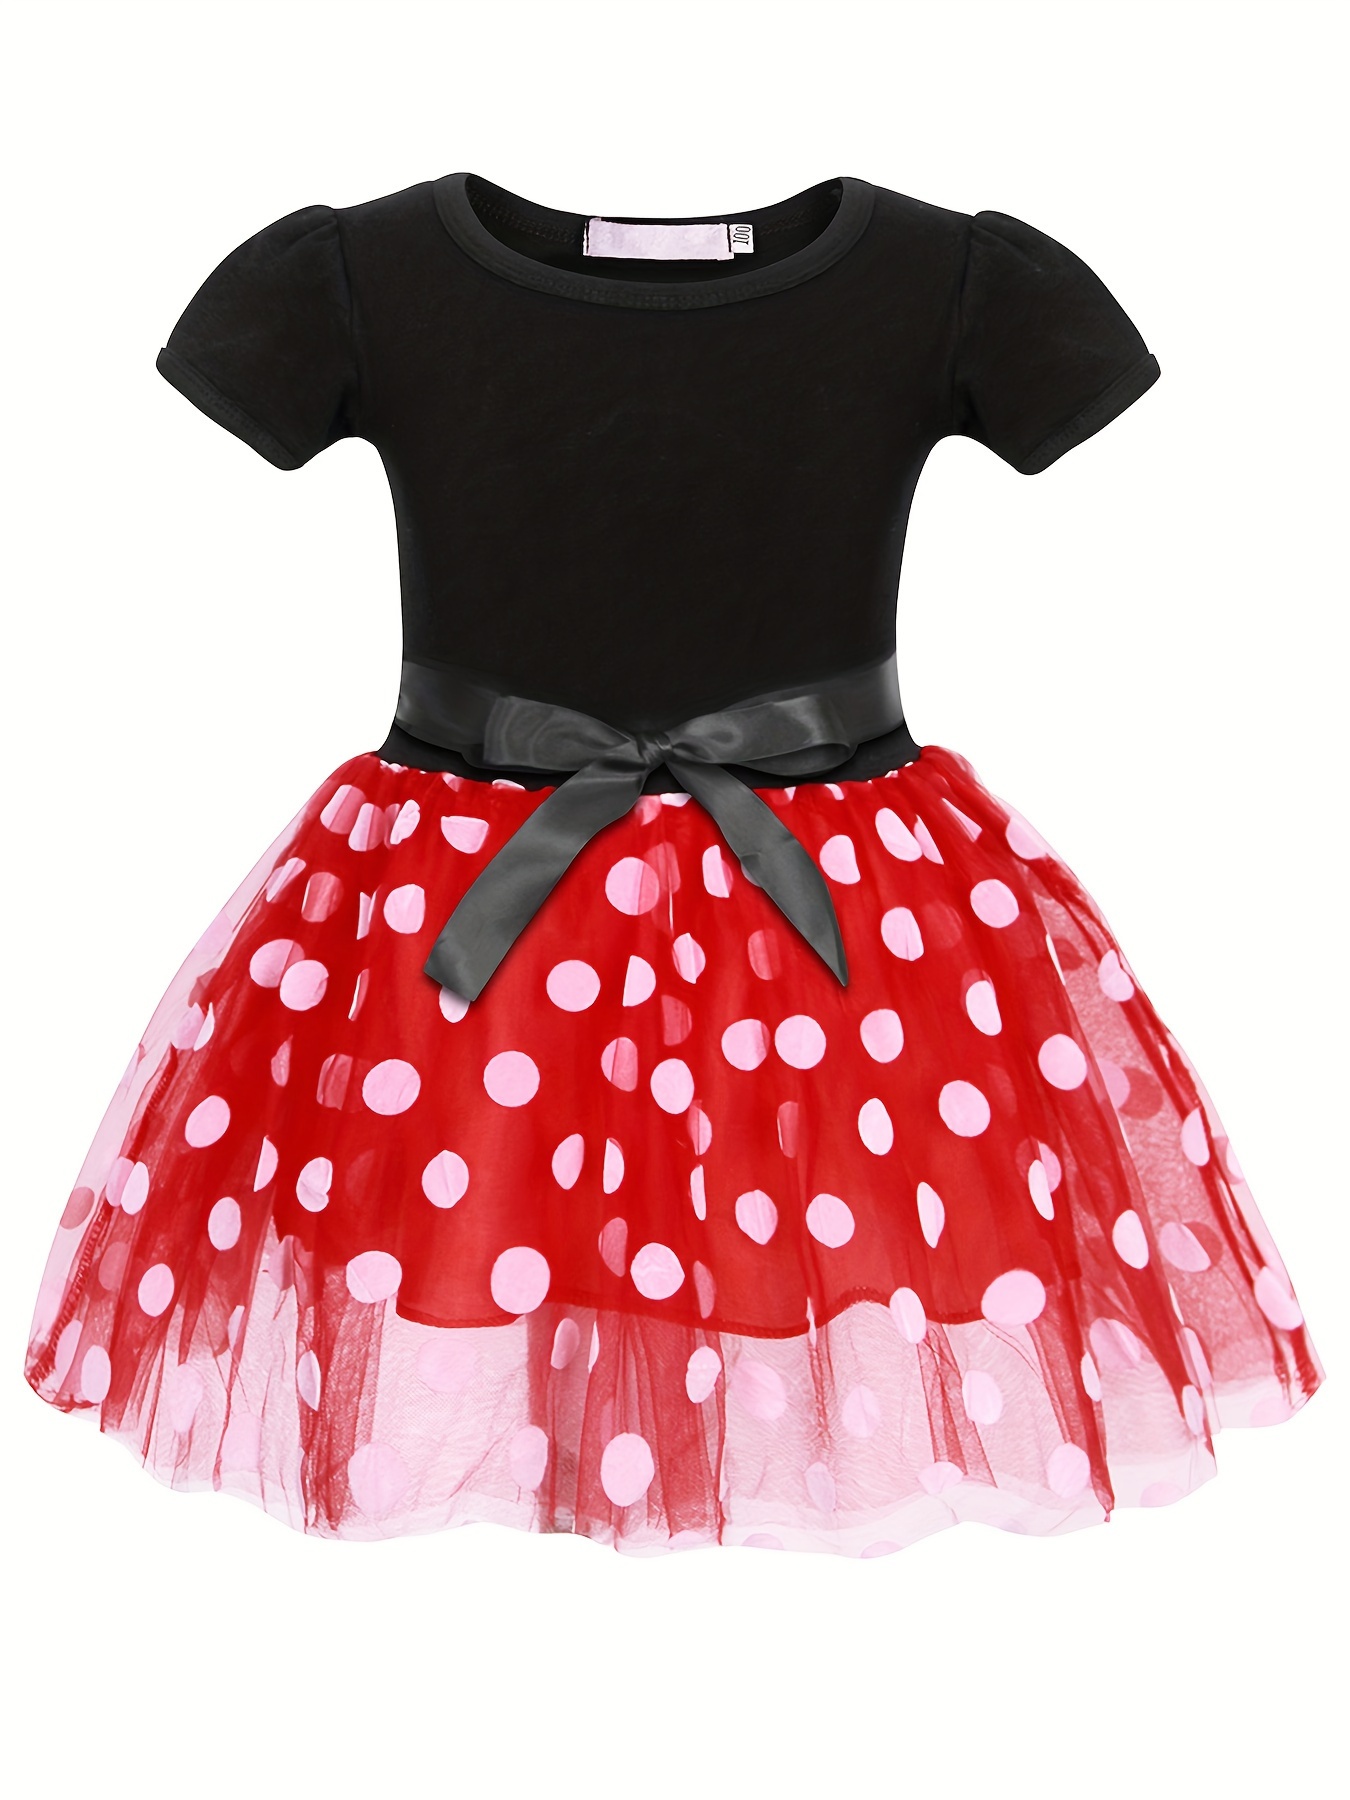 Enfants Fille Minnie Mouse Polka Dot Fête d'anniversaire Bow Tutu Tulle  Robe A